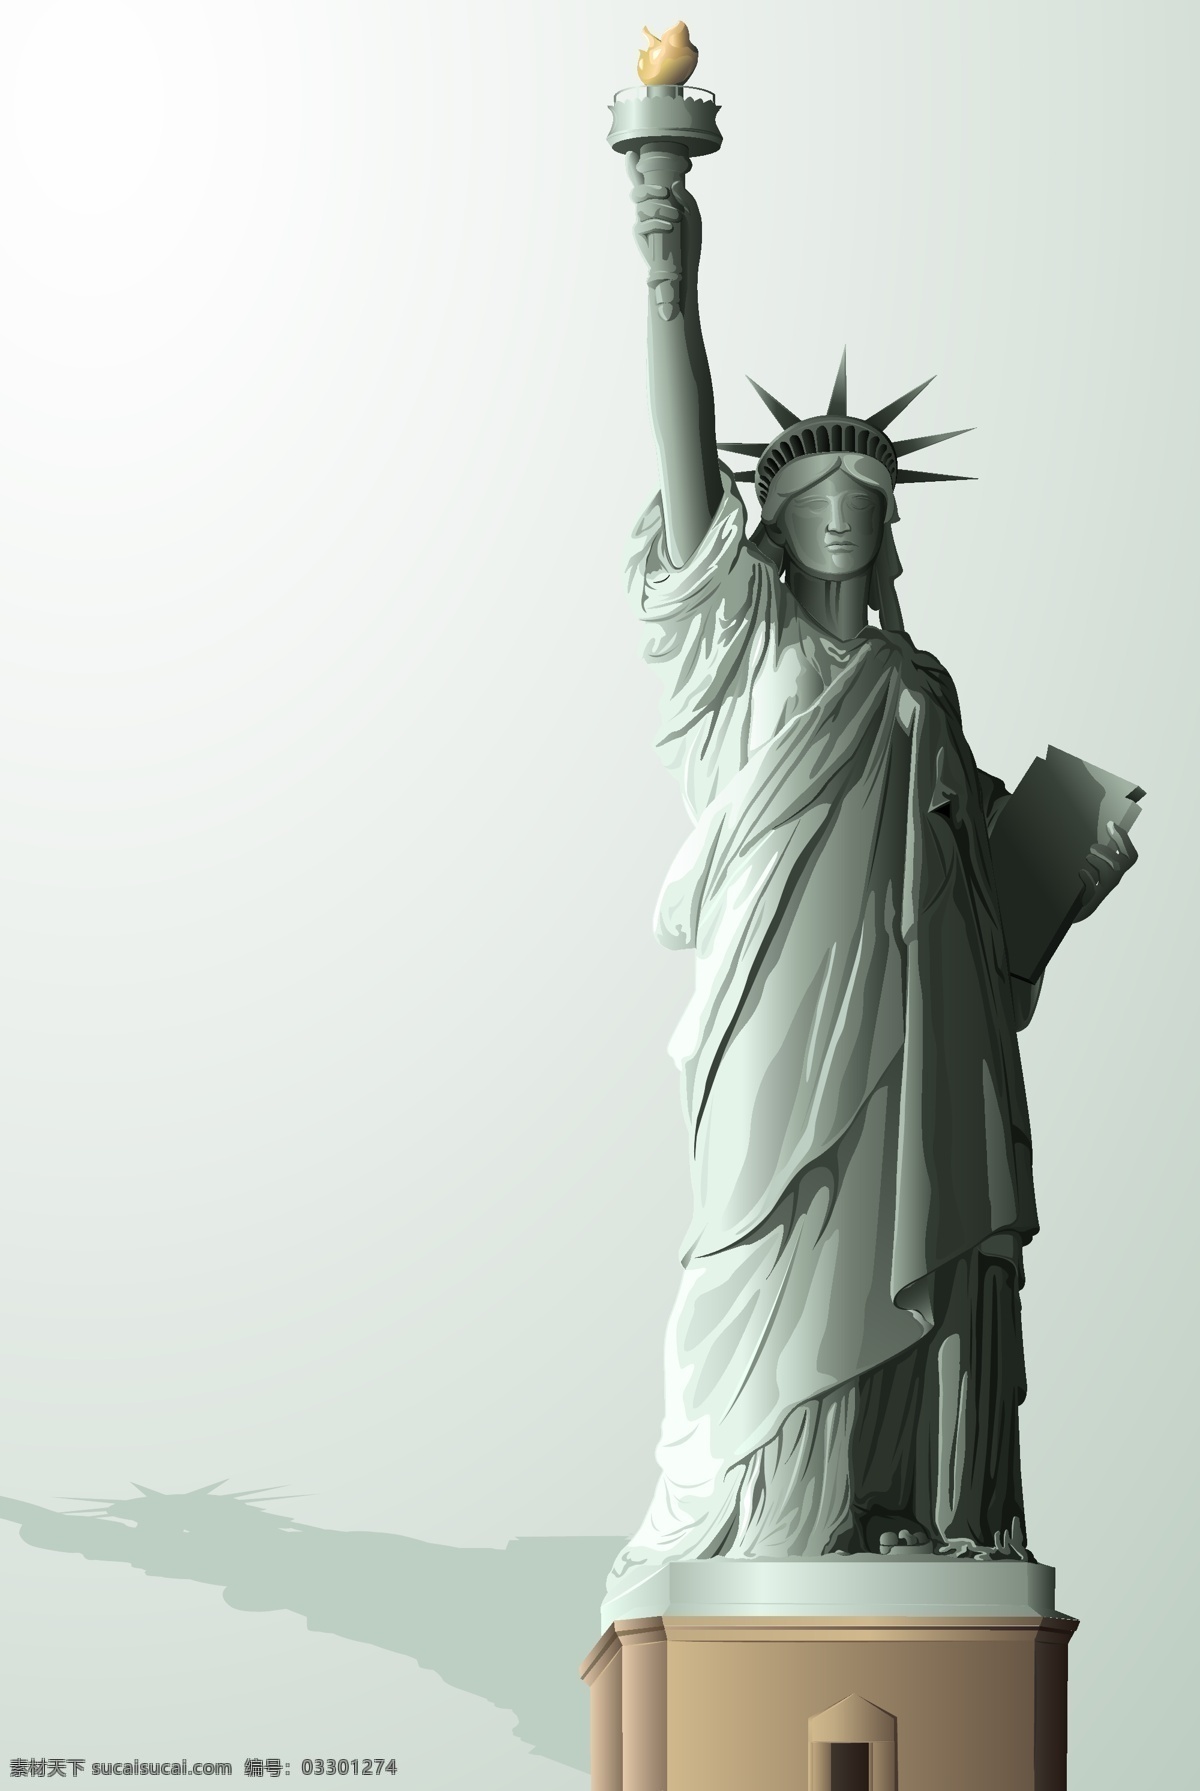 自由 女神像 矢量 怒神 女神 美国 纽约 地标 国际 国家 建筑 标志性 自由女神 美国女神 美国雕像 雕像 塑像 石灰 分层